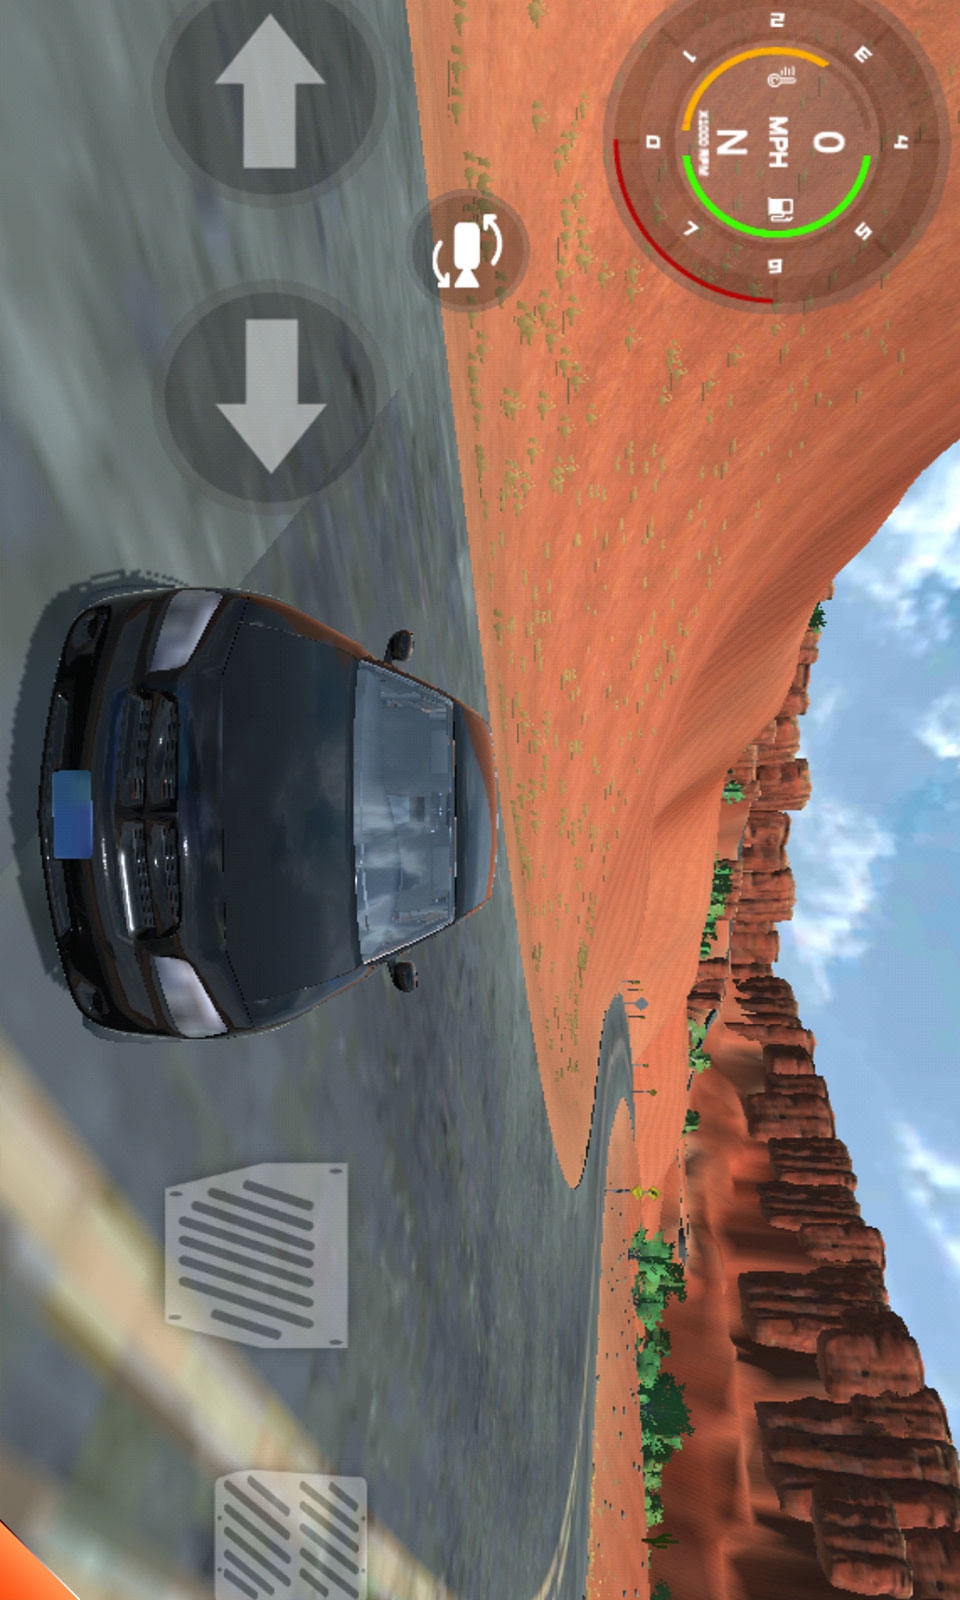 Car accident simulator (trial version)